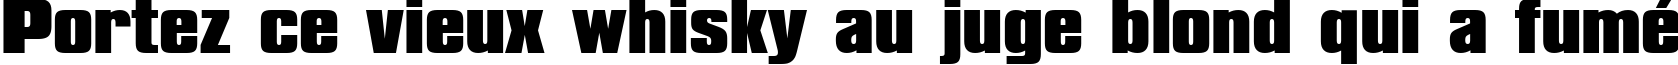 Пример написания шрифтом font102 текста на французском